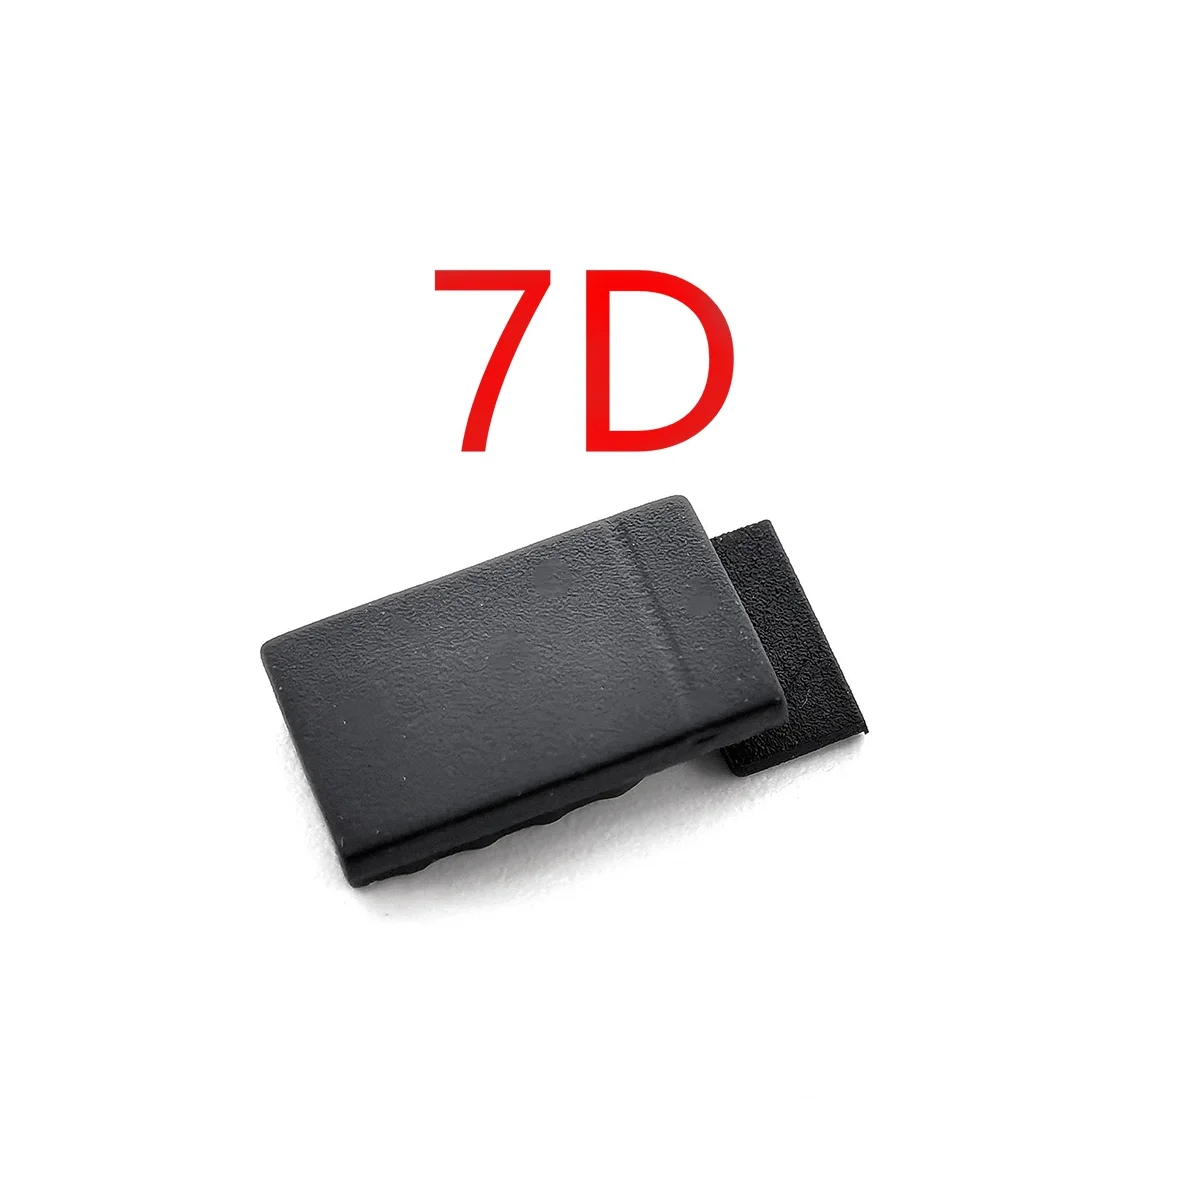 1шт Новый для 7D Кабельной Дверцы Камеры Резиновая Крышка, Батарейный Отсек Маленькая Резиновая Запасная Часть